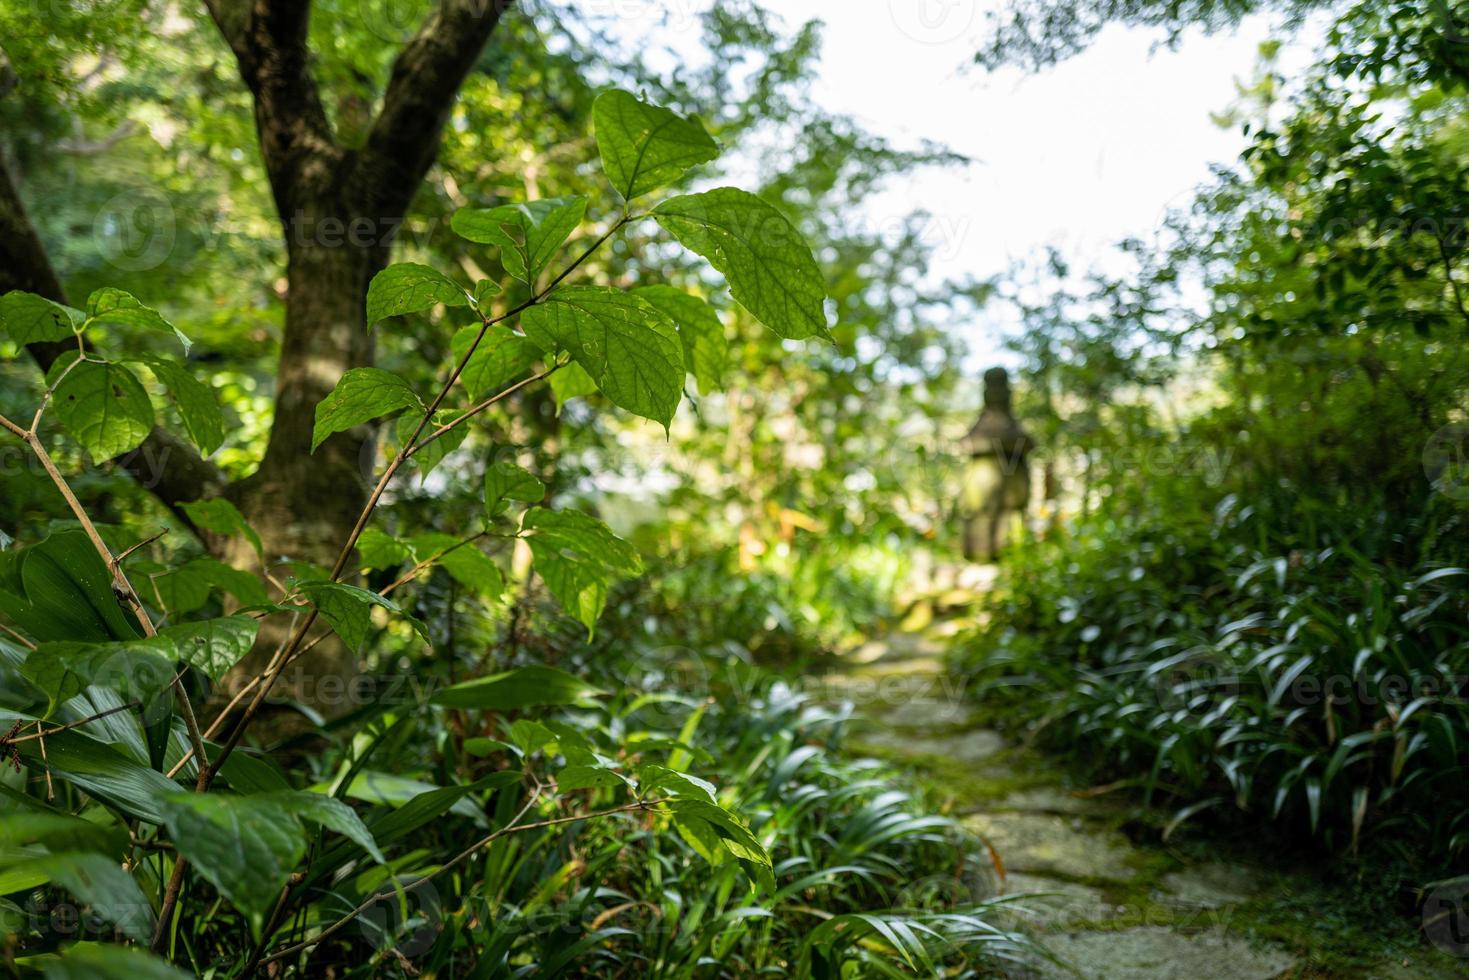 un jardín en kamakura en japón foto